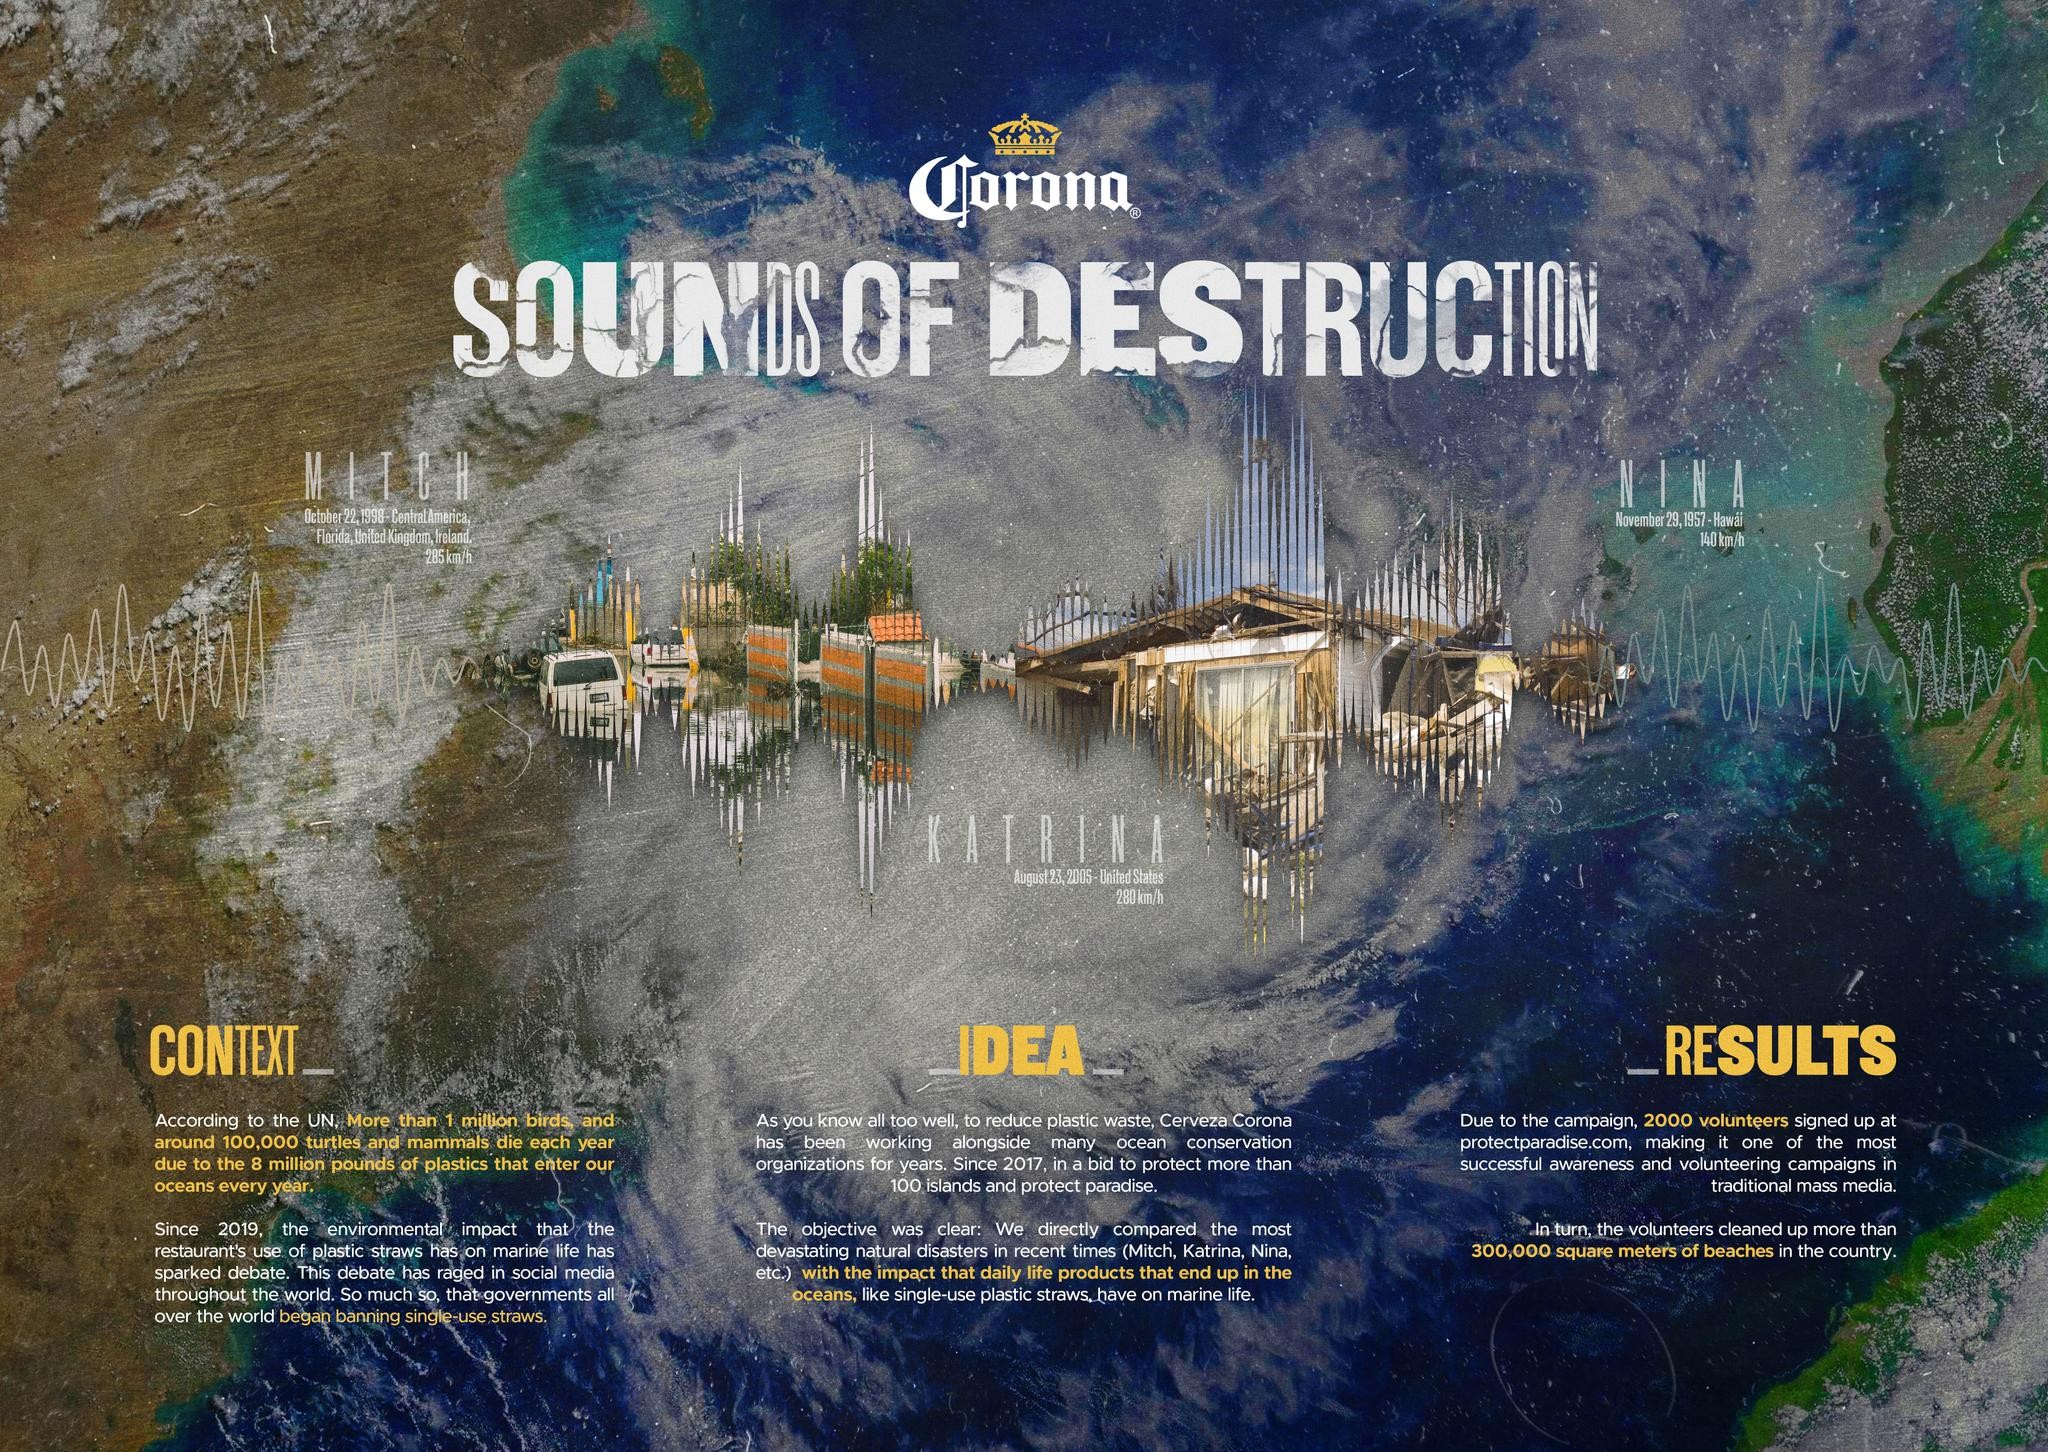 Sounds of destruction